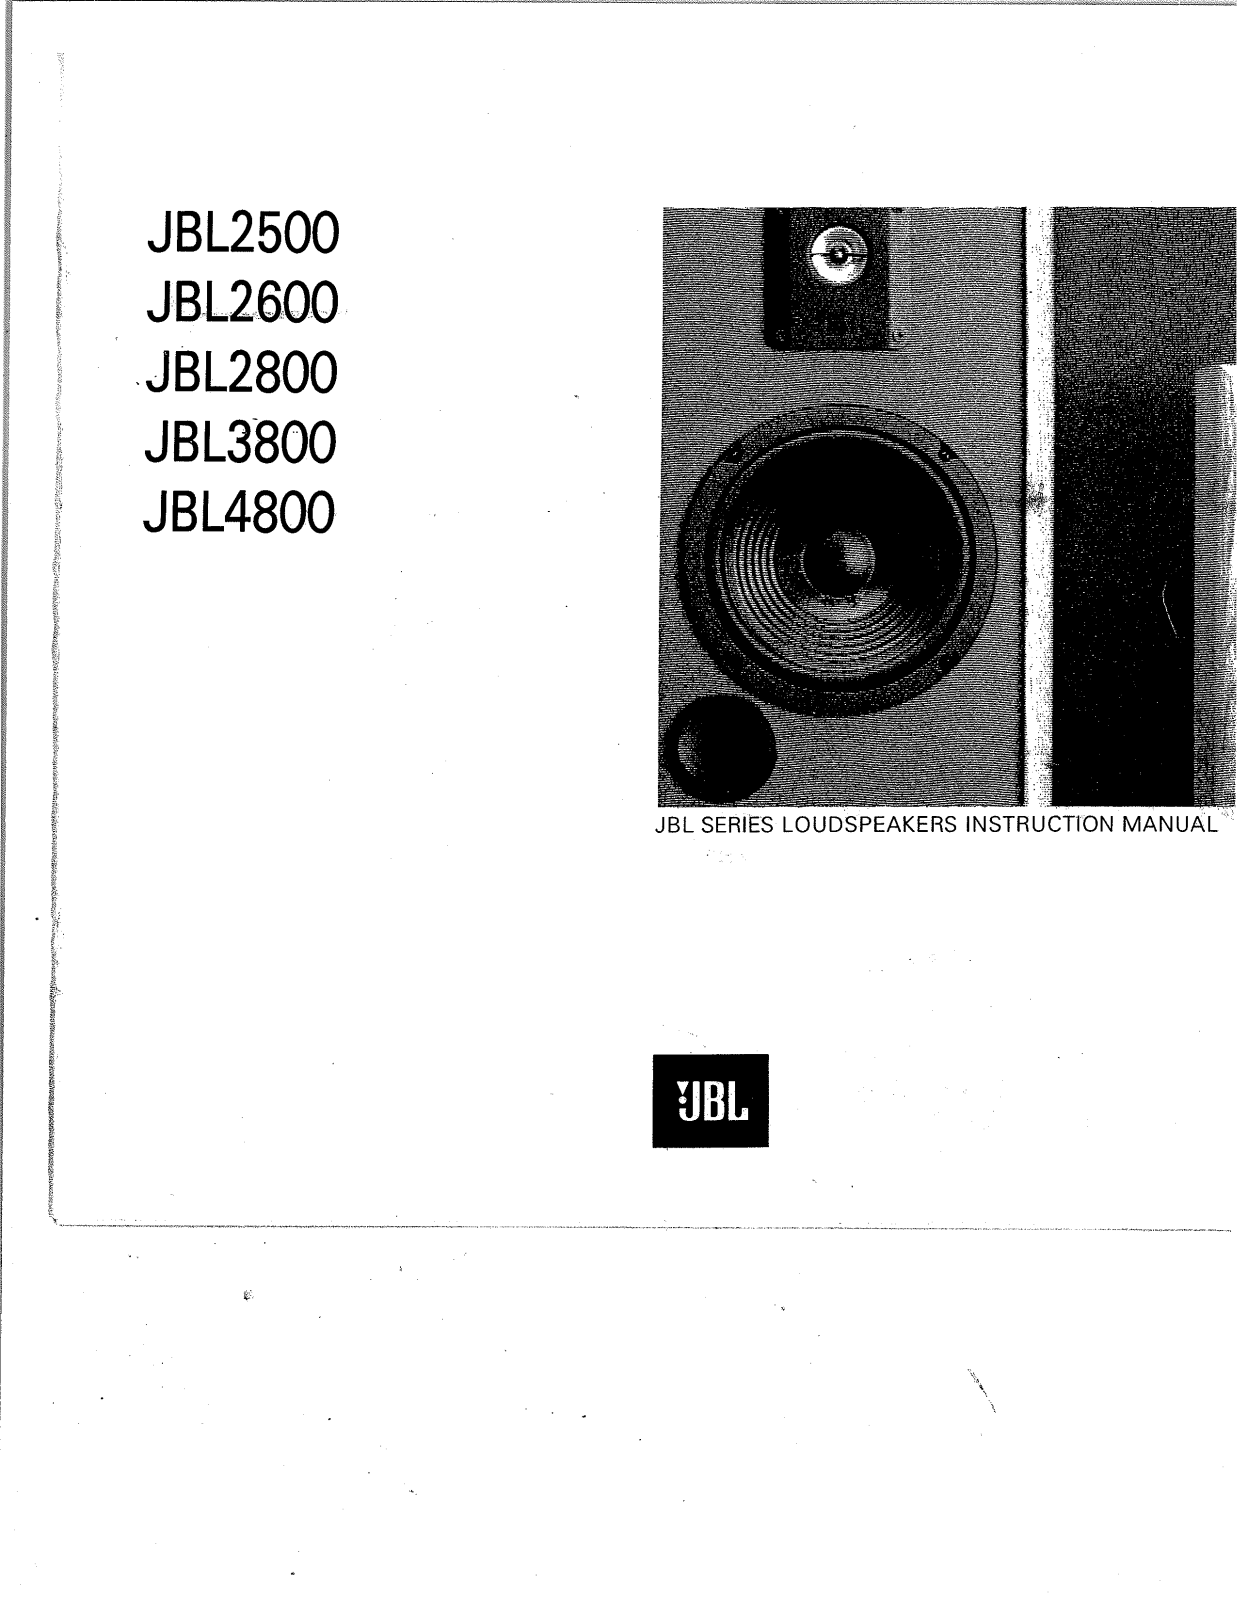 Jbl 4800, 3800, 2600, 2500, 2800 Owners Manual